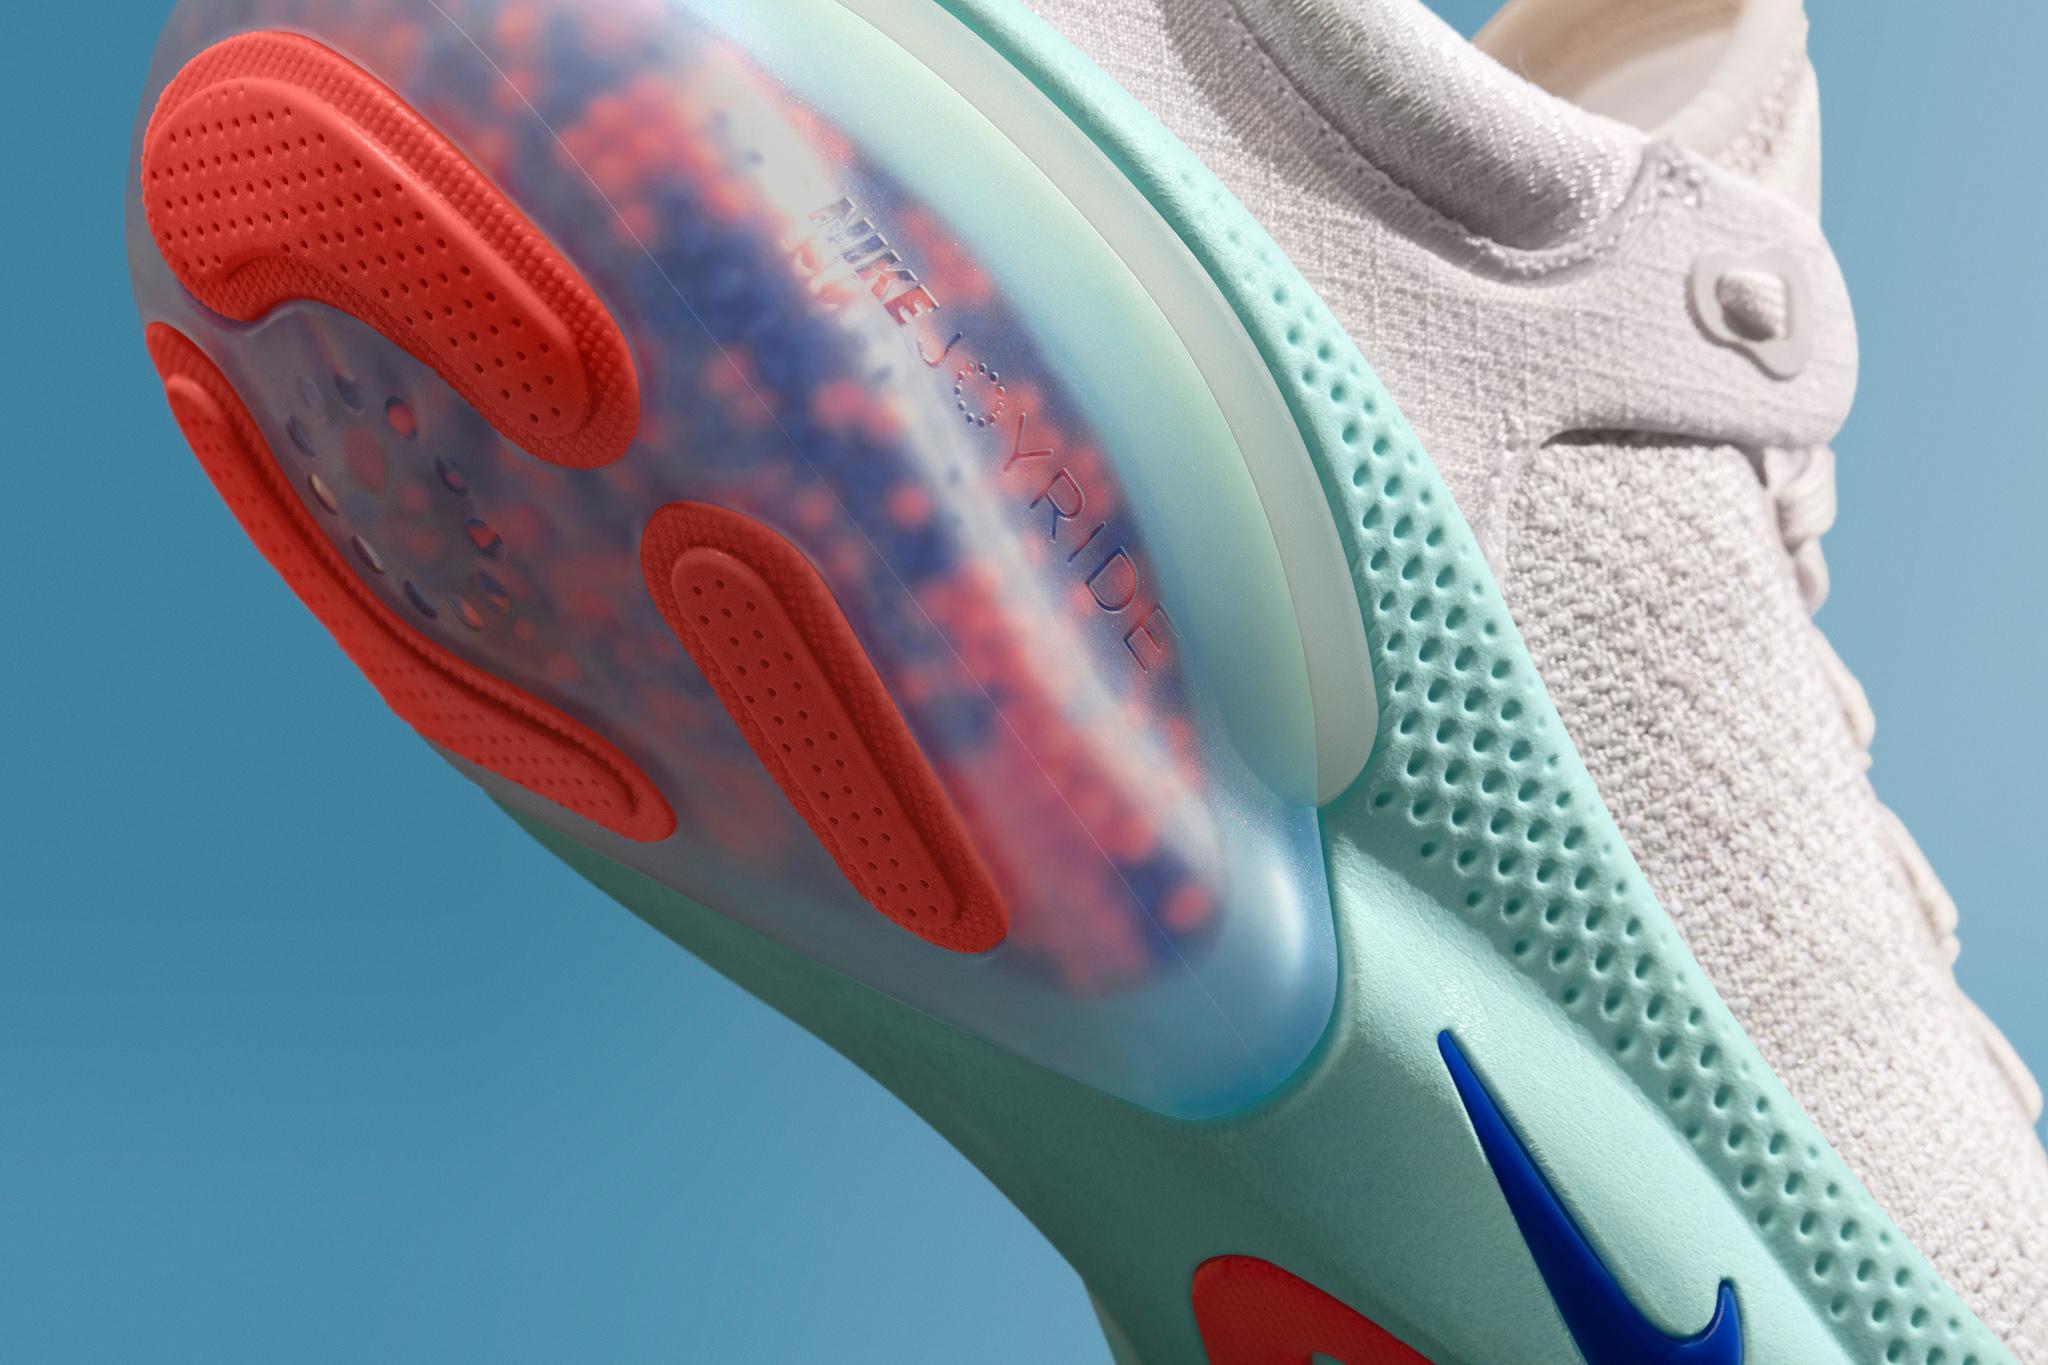 Nike unveils new Joyride technology 